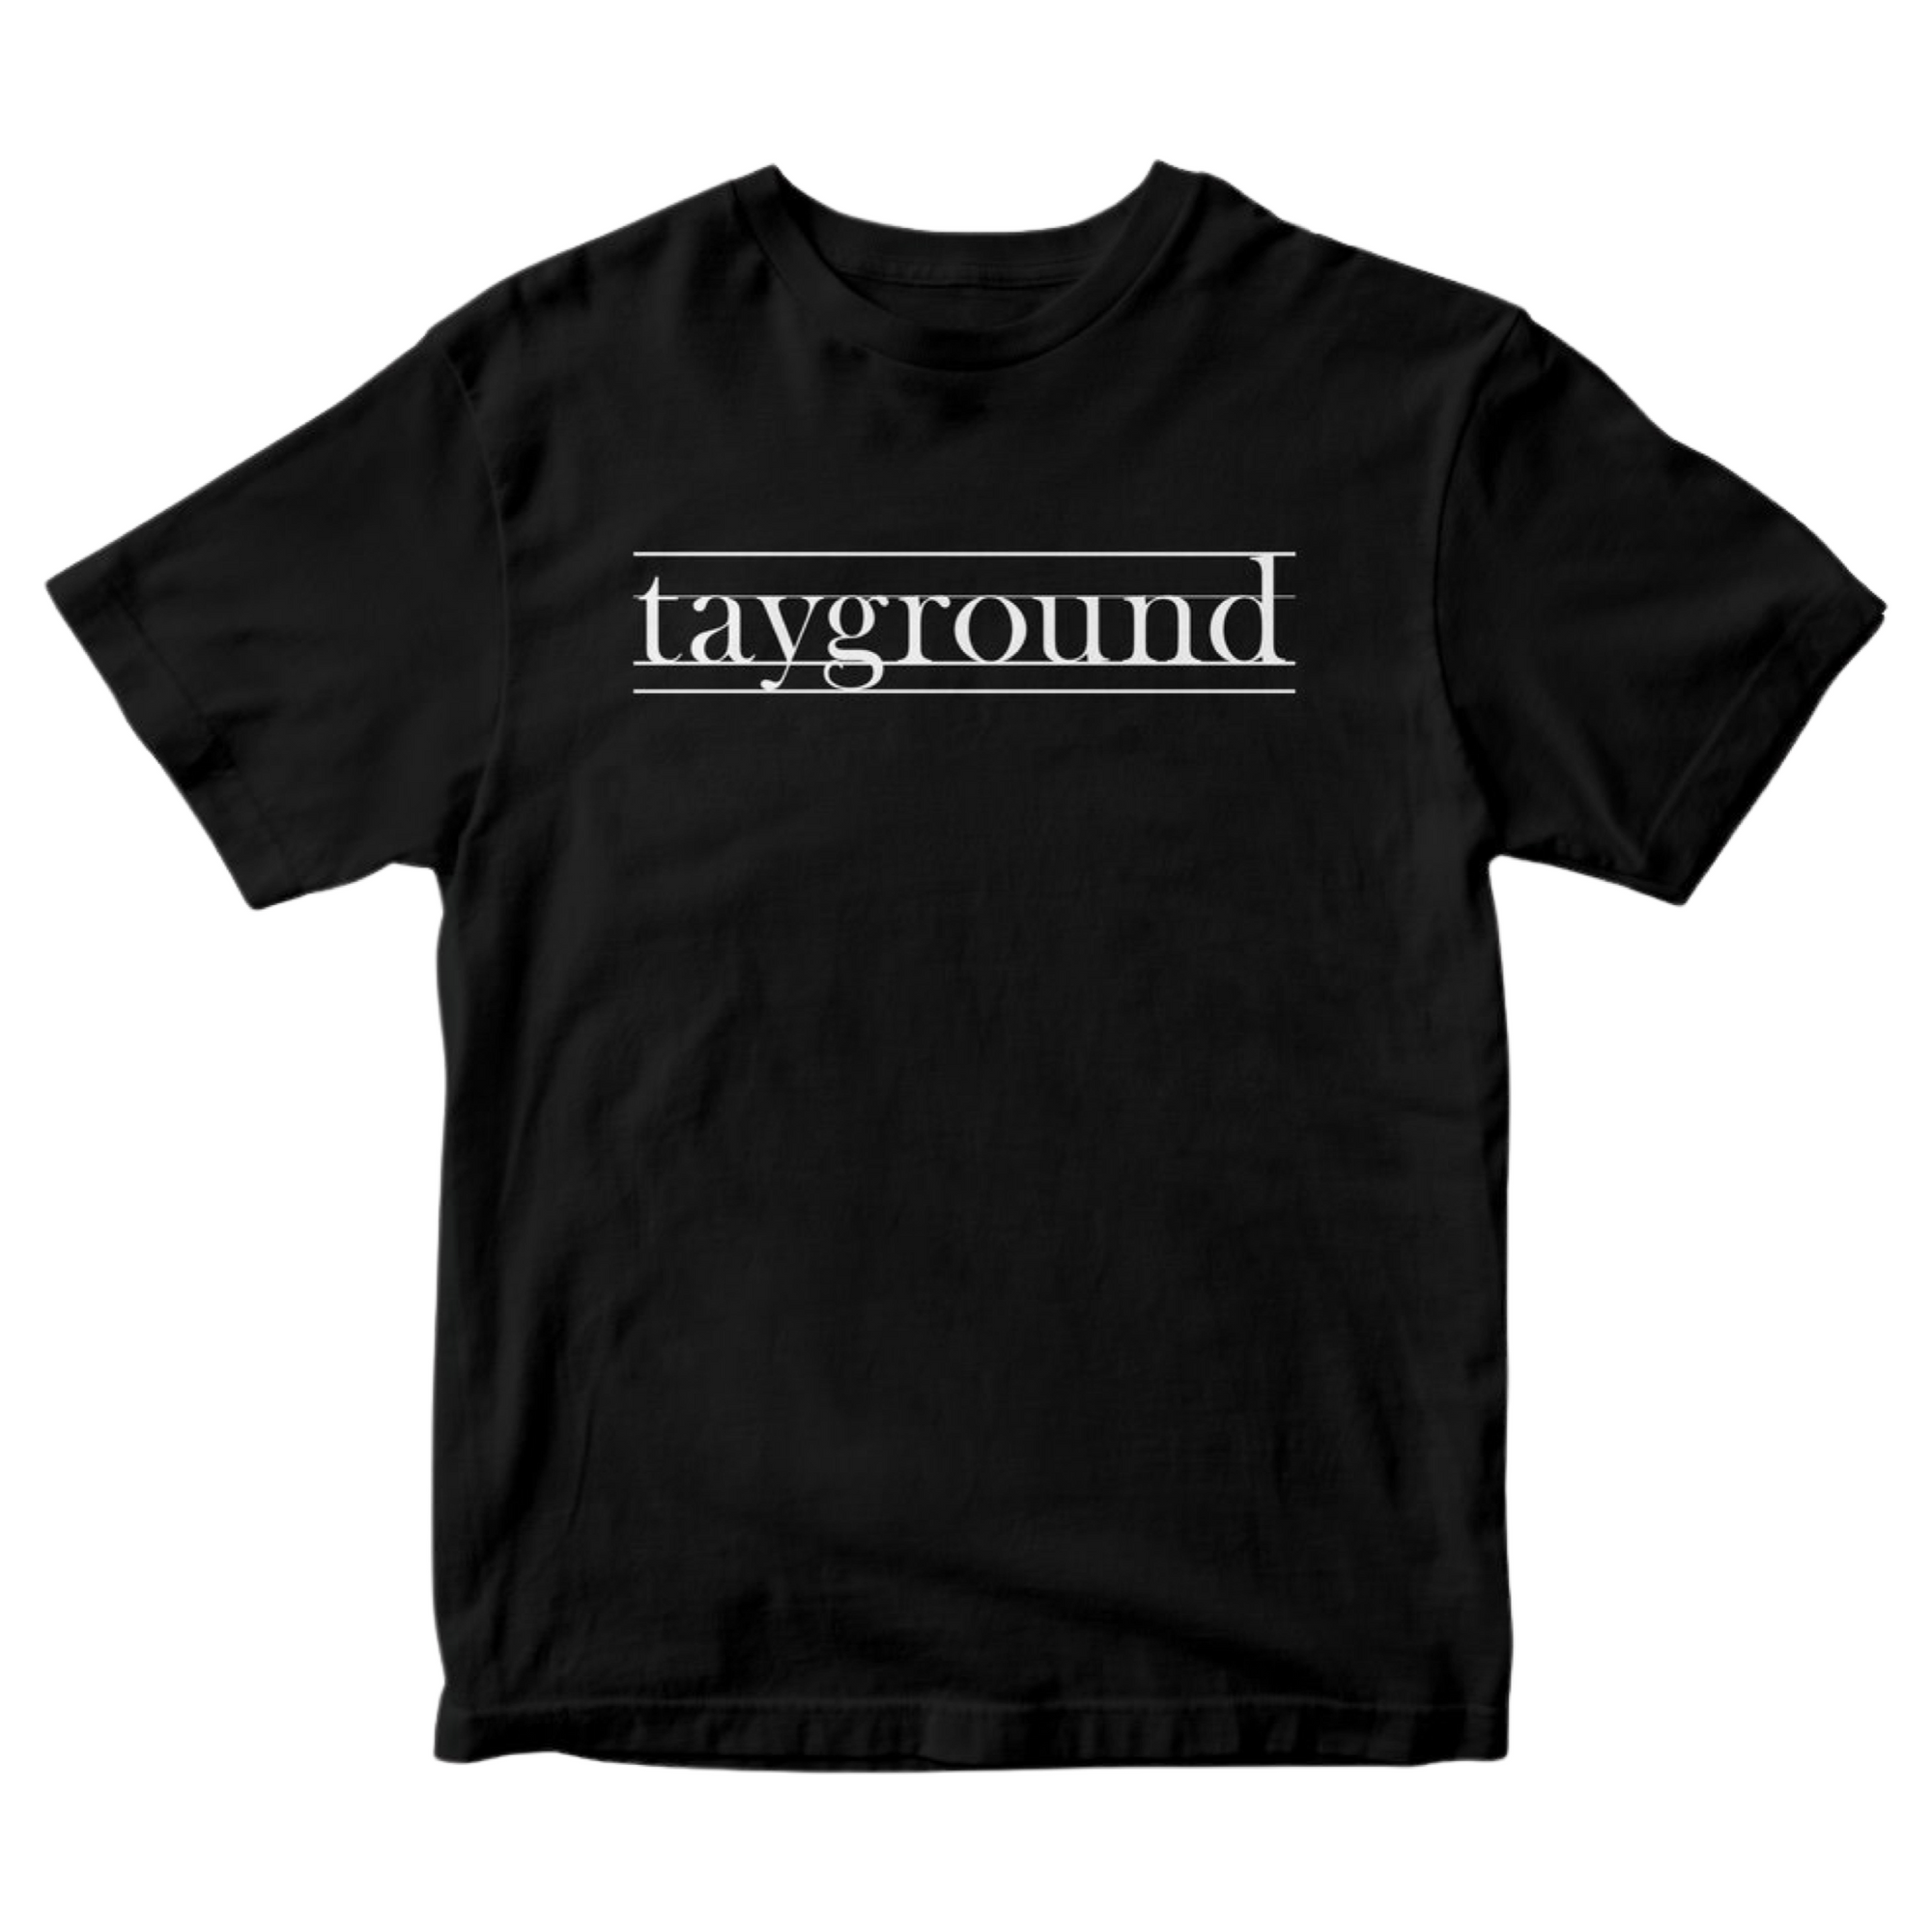 tayground Shirt White Text